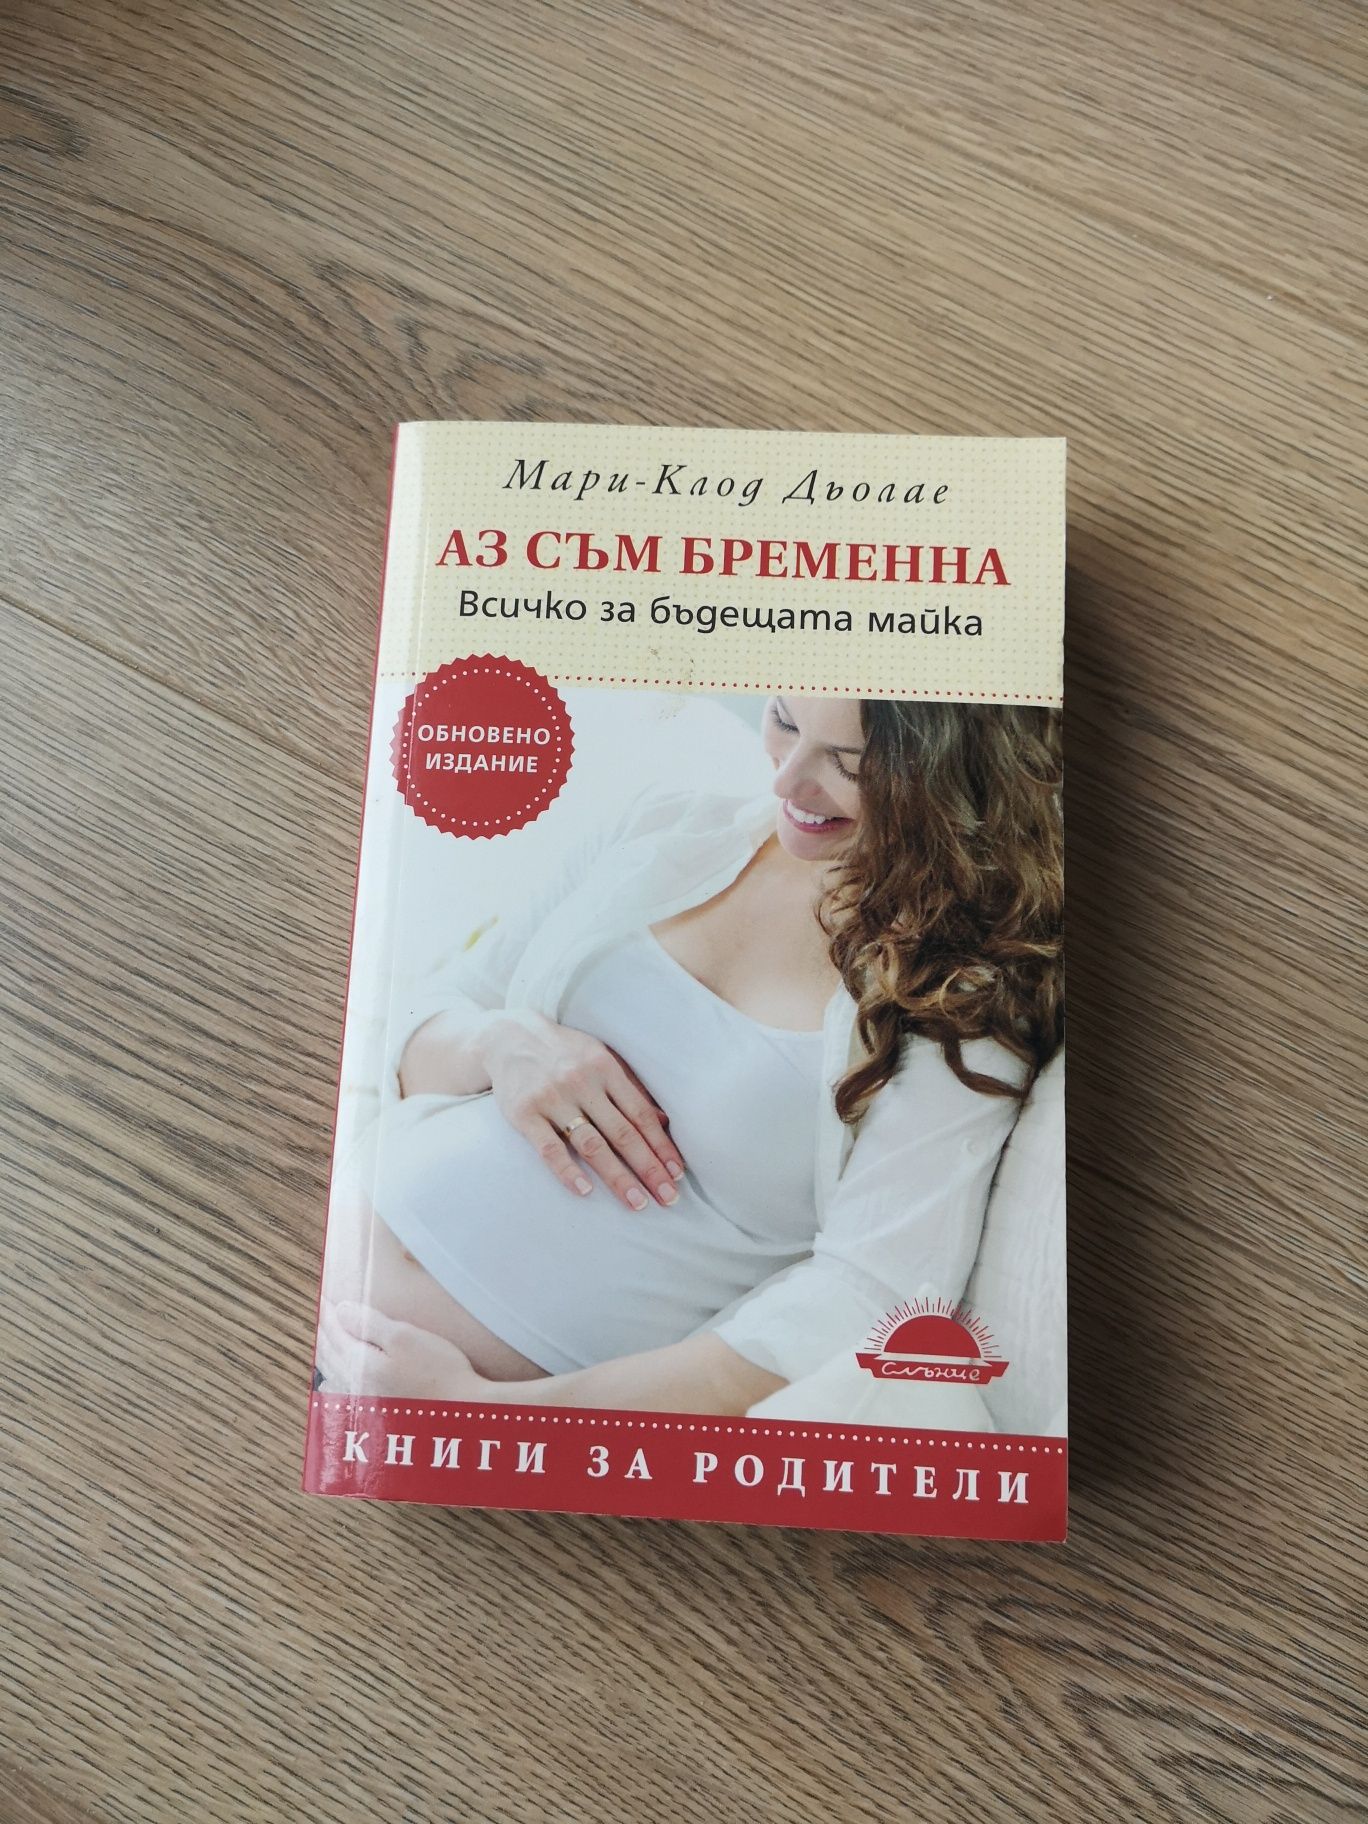 Книги за бременни и майки
Цена  на всички книги
1.Детето в семейство -